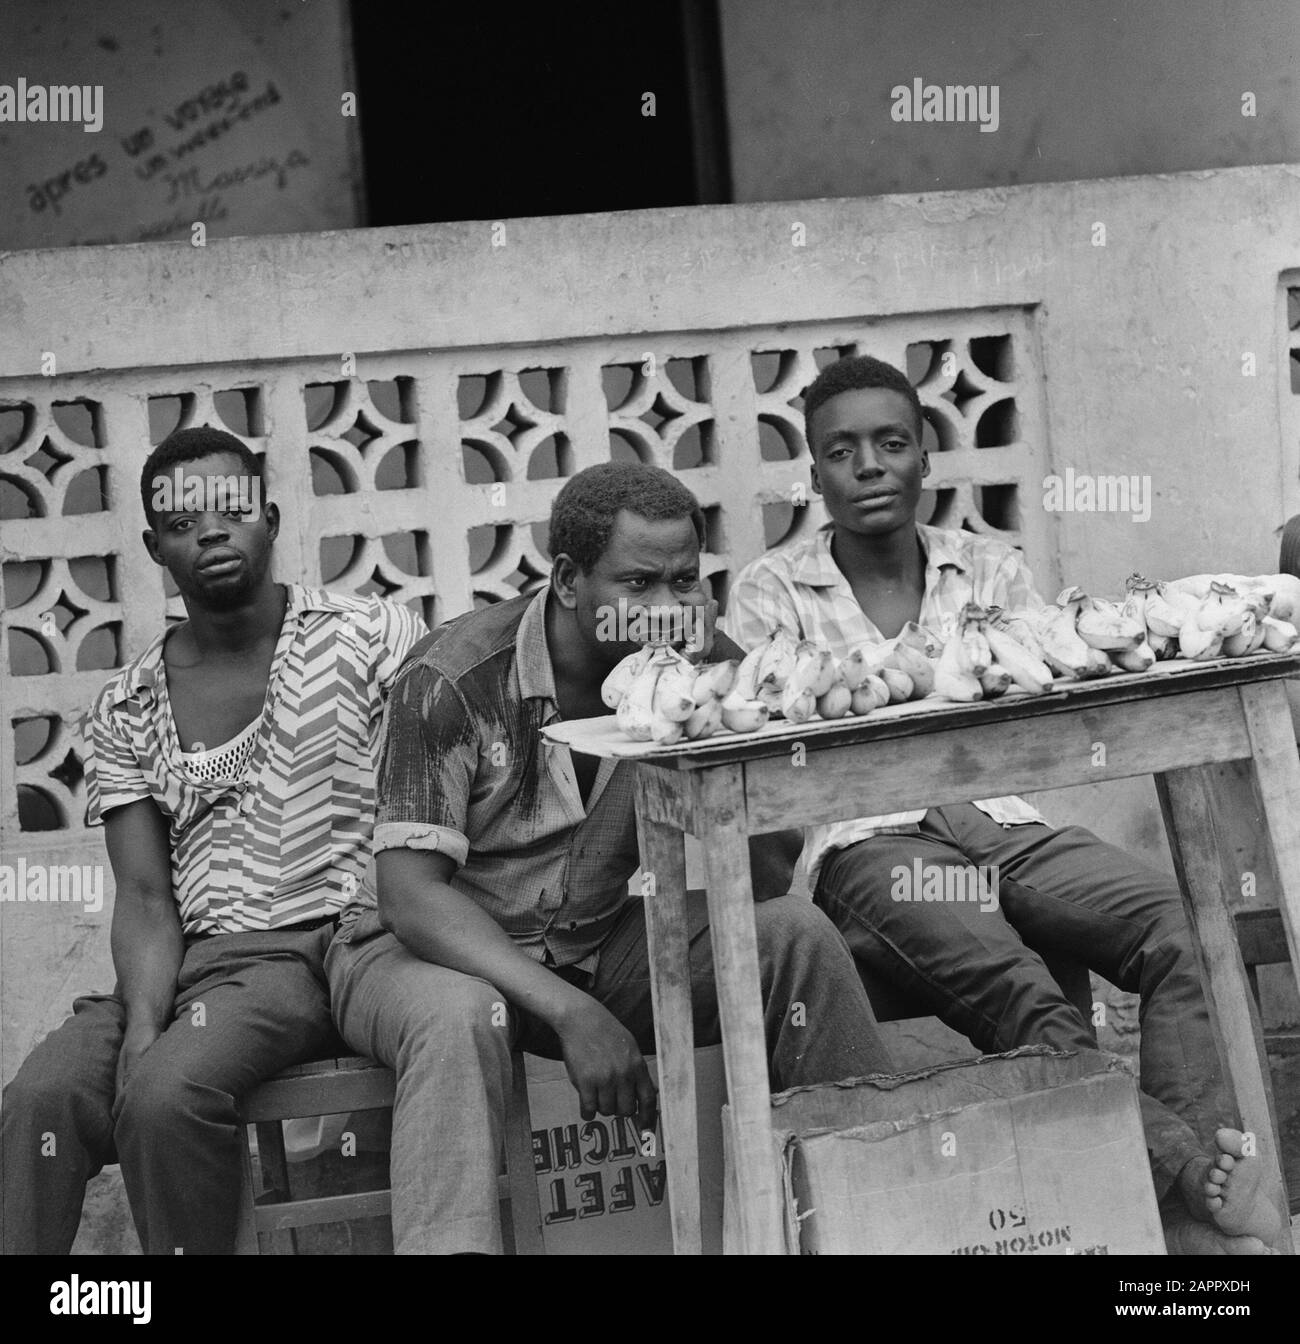 Zaire (ehemals Belgischer Kongo) Drei Männer hinter Tisch mit Handelsdatum: 24. Oktober 1973 Ort: Kongo, Zaire Schlüsselwörter: Männer, Straßenhandel Stockfoto